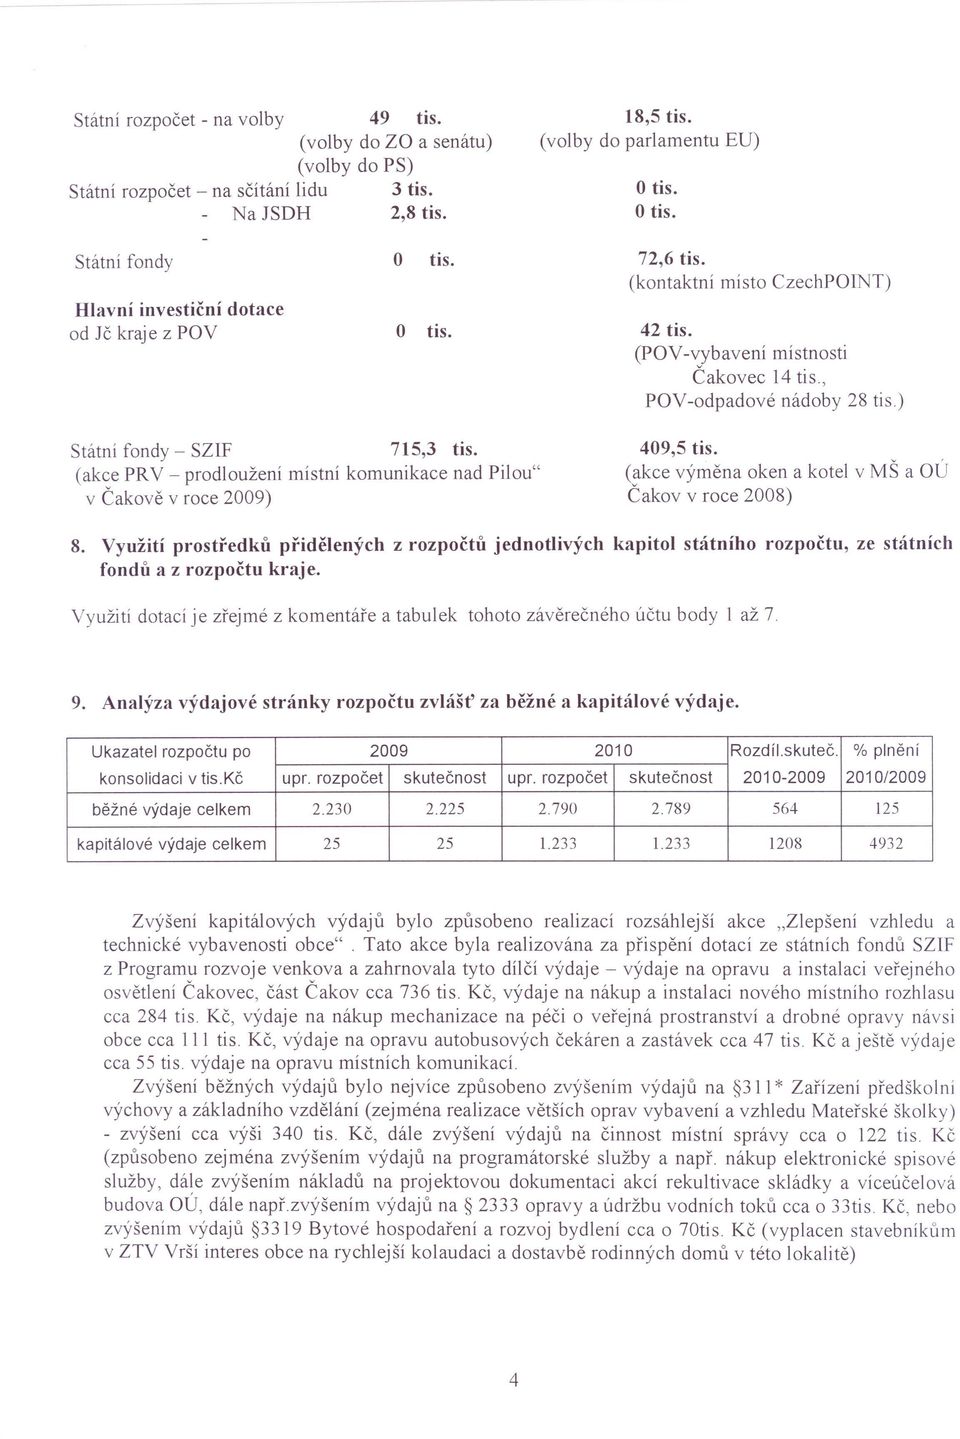 (akce PRV - prodloužení místní komunikace nad Pilou" v Čakově v roce 2009) 409,5 tis. (akce výměna oken a kotel v MŠ a OÚ Čakov v roce 2008) 8.